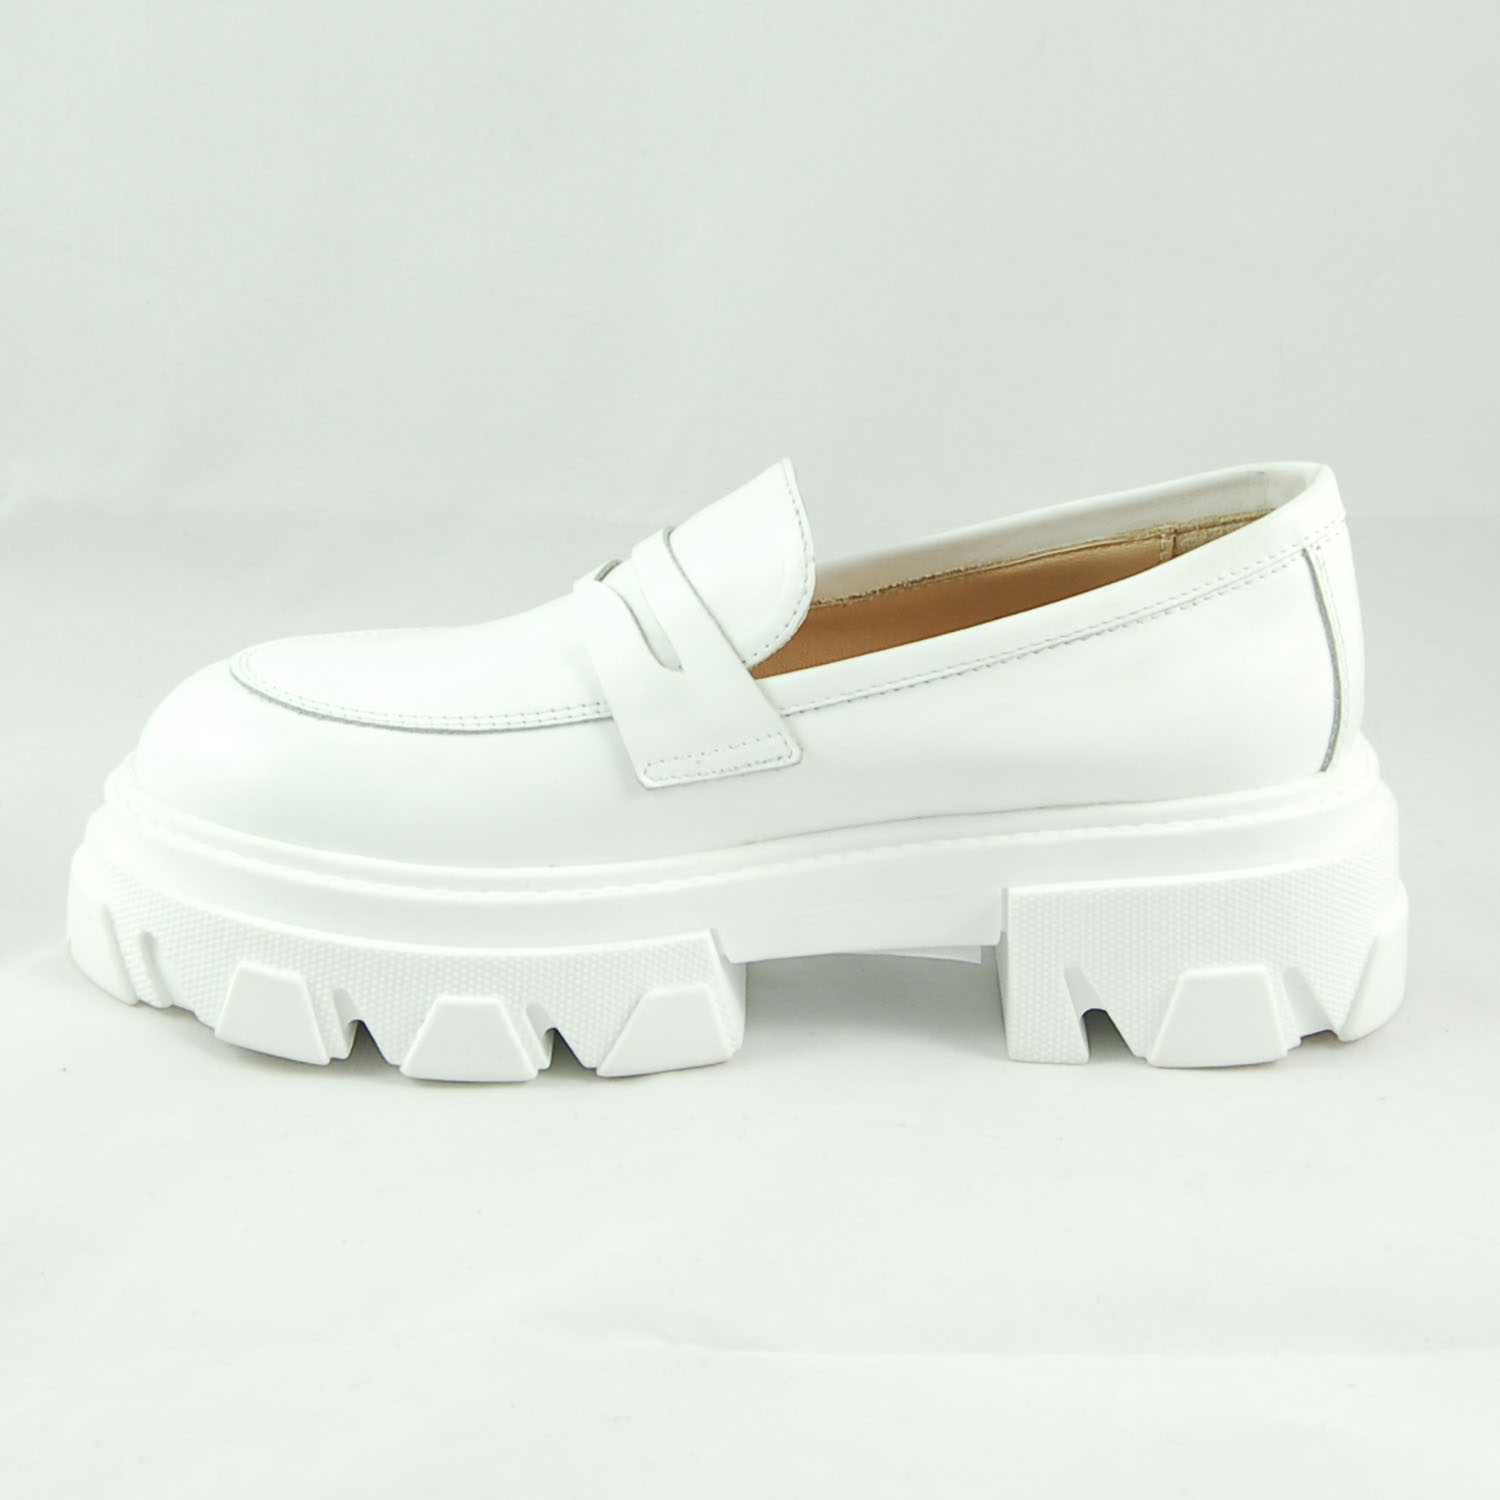 IM BK 160 Vitello Bianco F.Luna – Aria Shoes